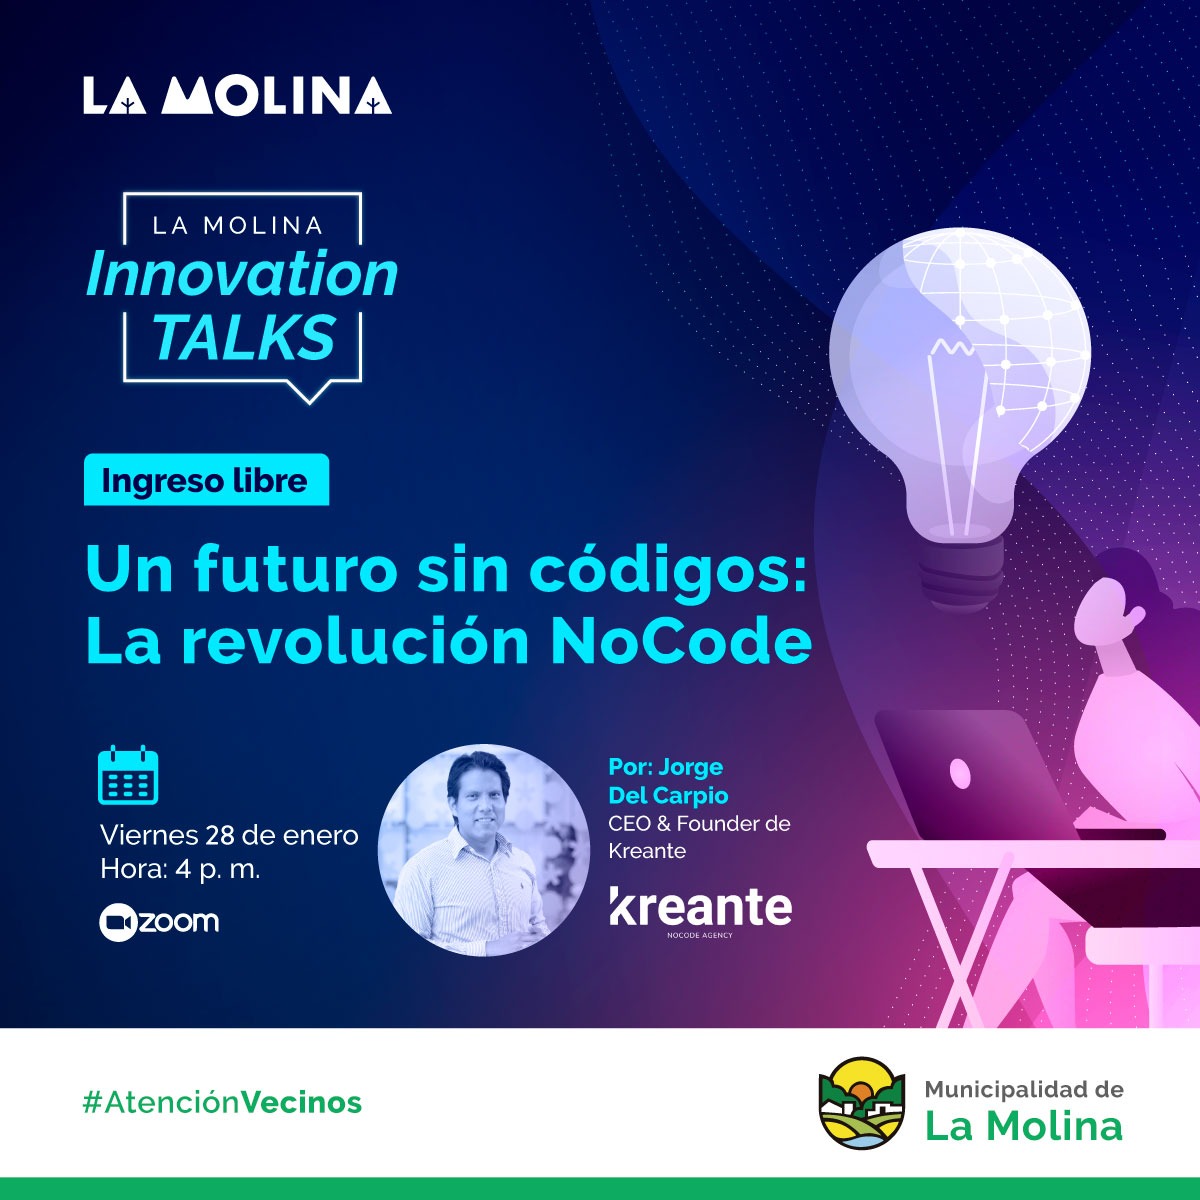 INNOVATION TALKS  Este 28 de enero se llevará a cabo la charla virtual Innovation Talks “Un futuro sin códigos: La revolución NoCode” dirigido por Jorge Del Carpio CEO & Founder de Kreante, la primera agencia de NoCode en el Perú.